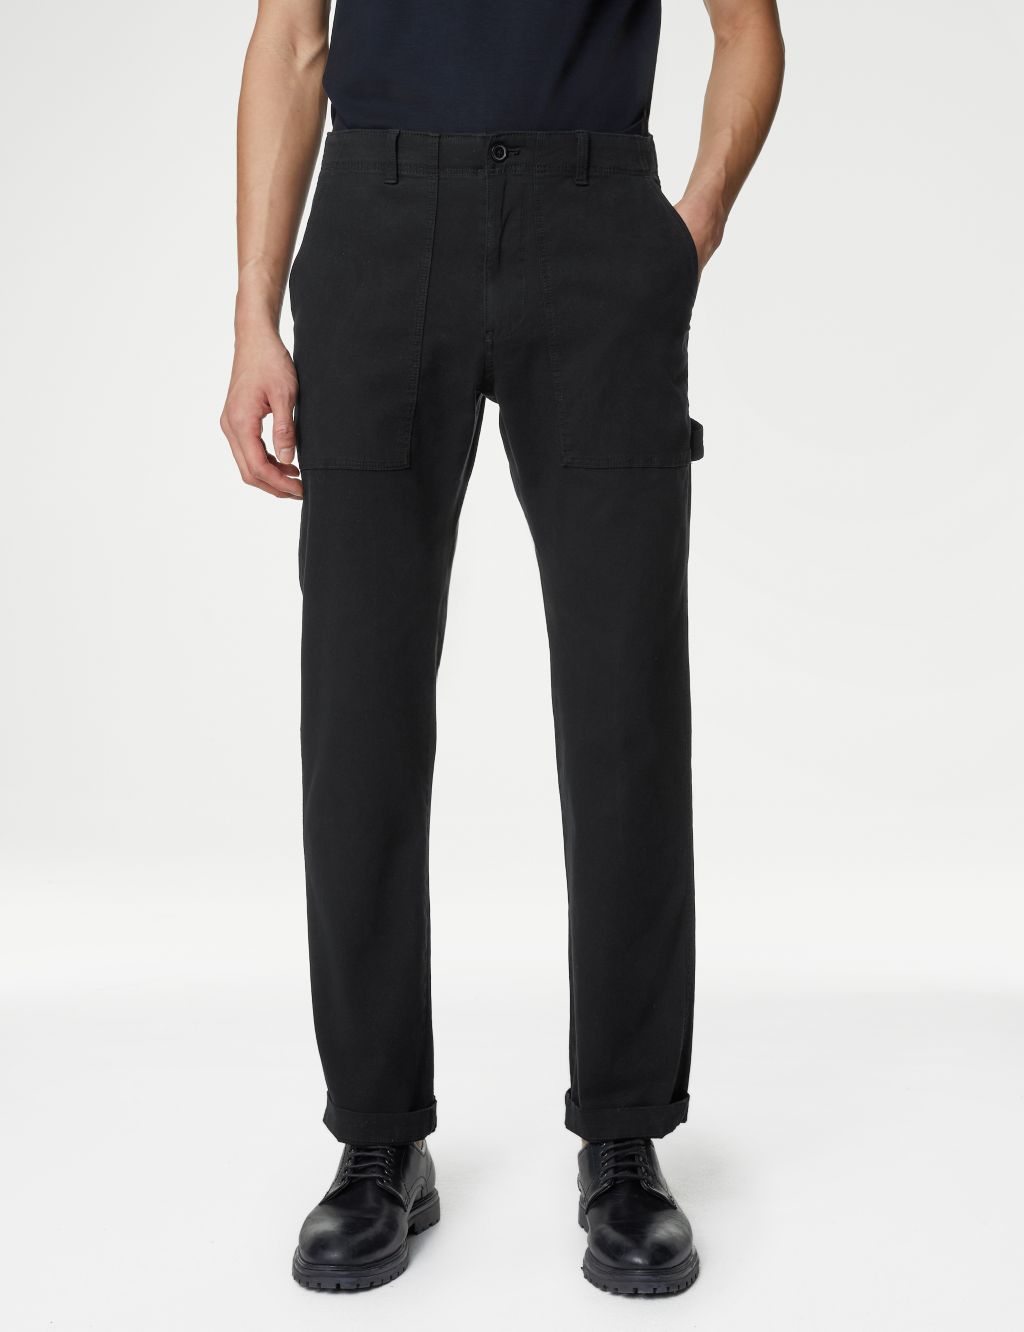 Shop Men's Trousers | M&S